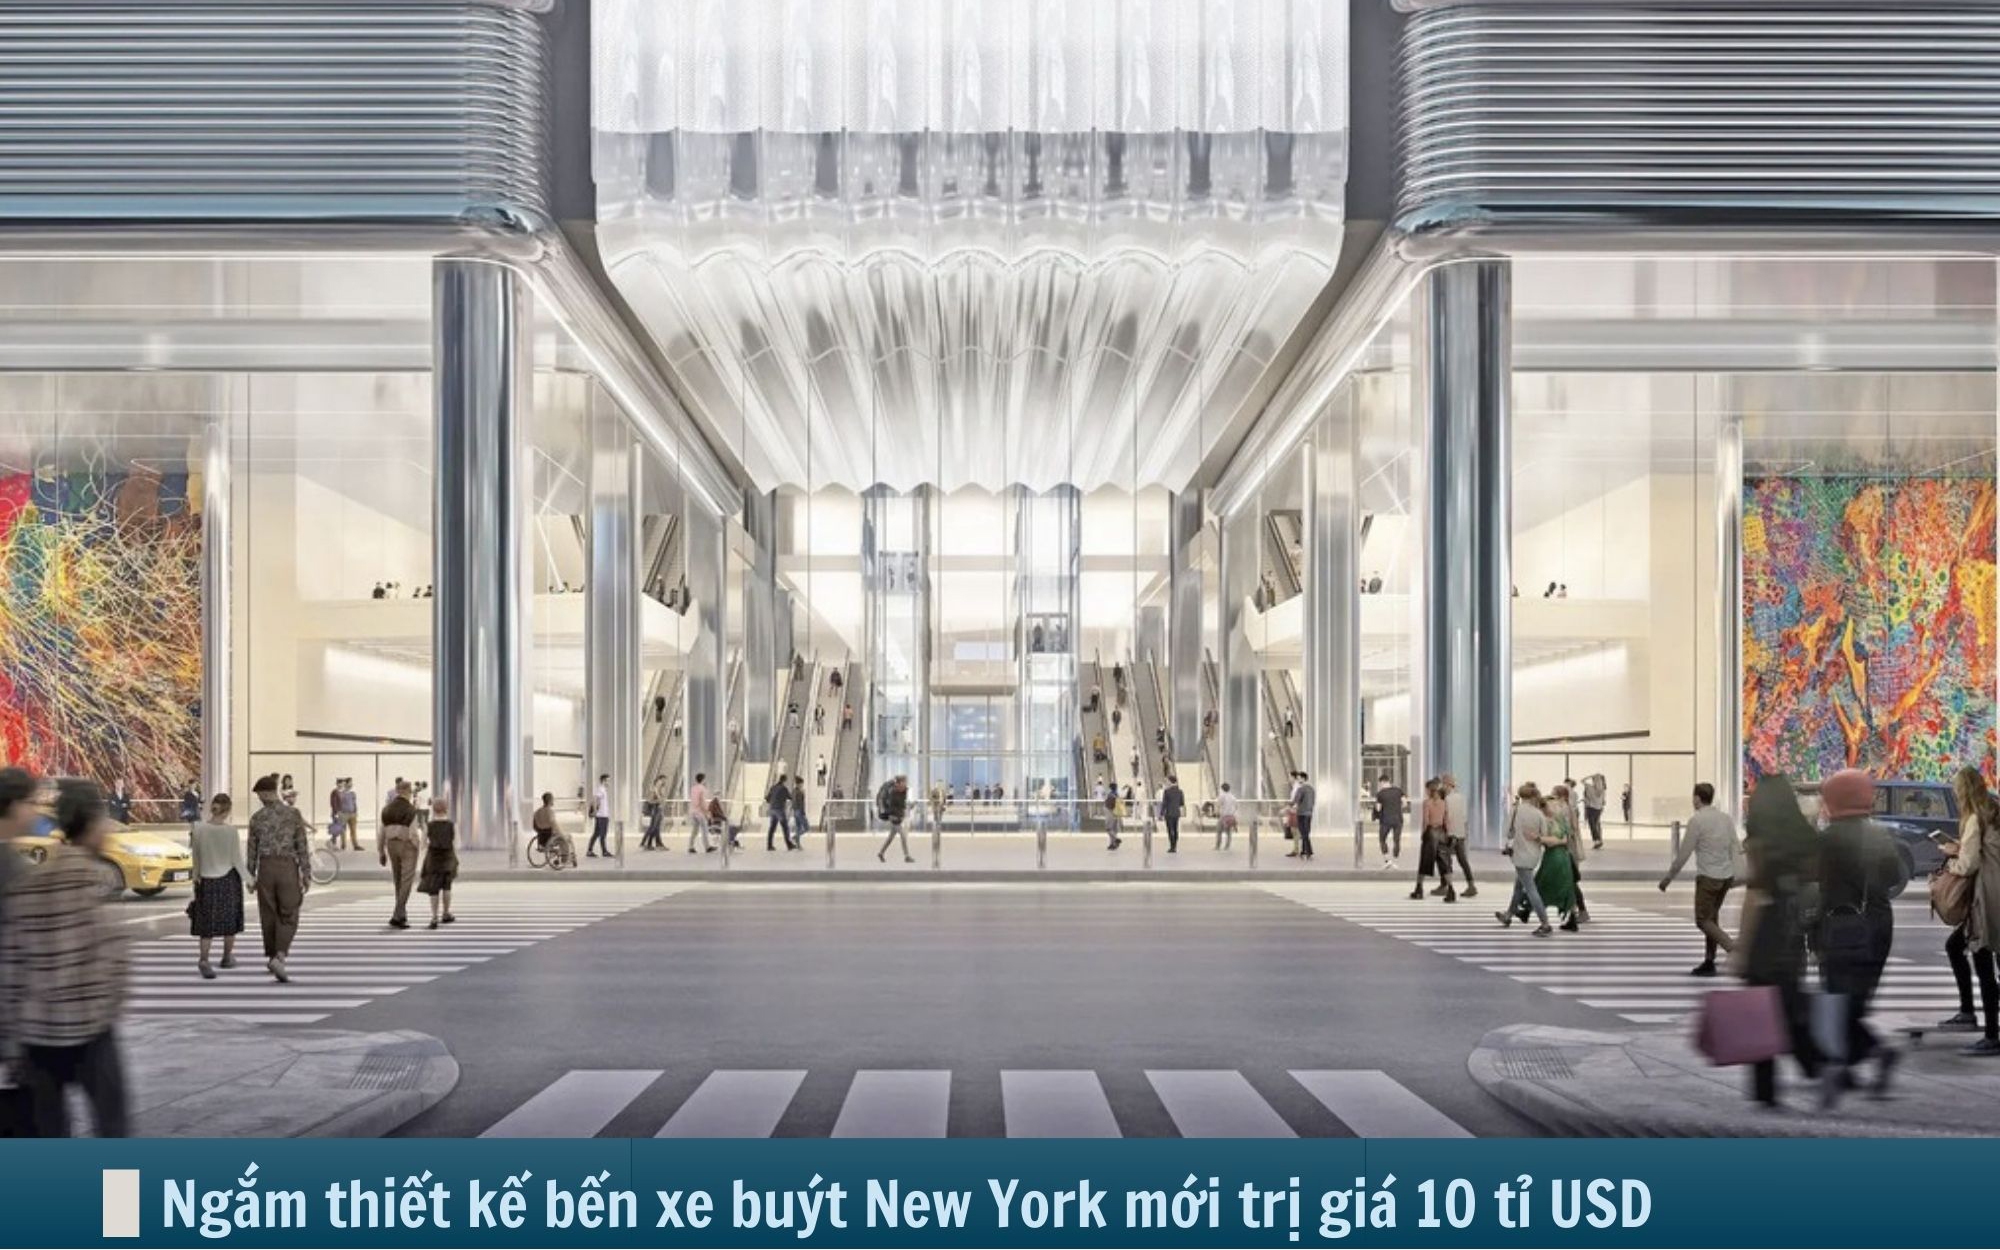 Hình ảnh báo chí 24h: New York sắp có bến buýt mới trị giá 10 tỷ USD